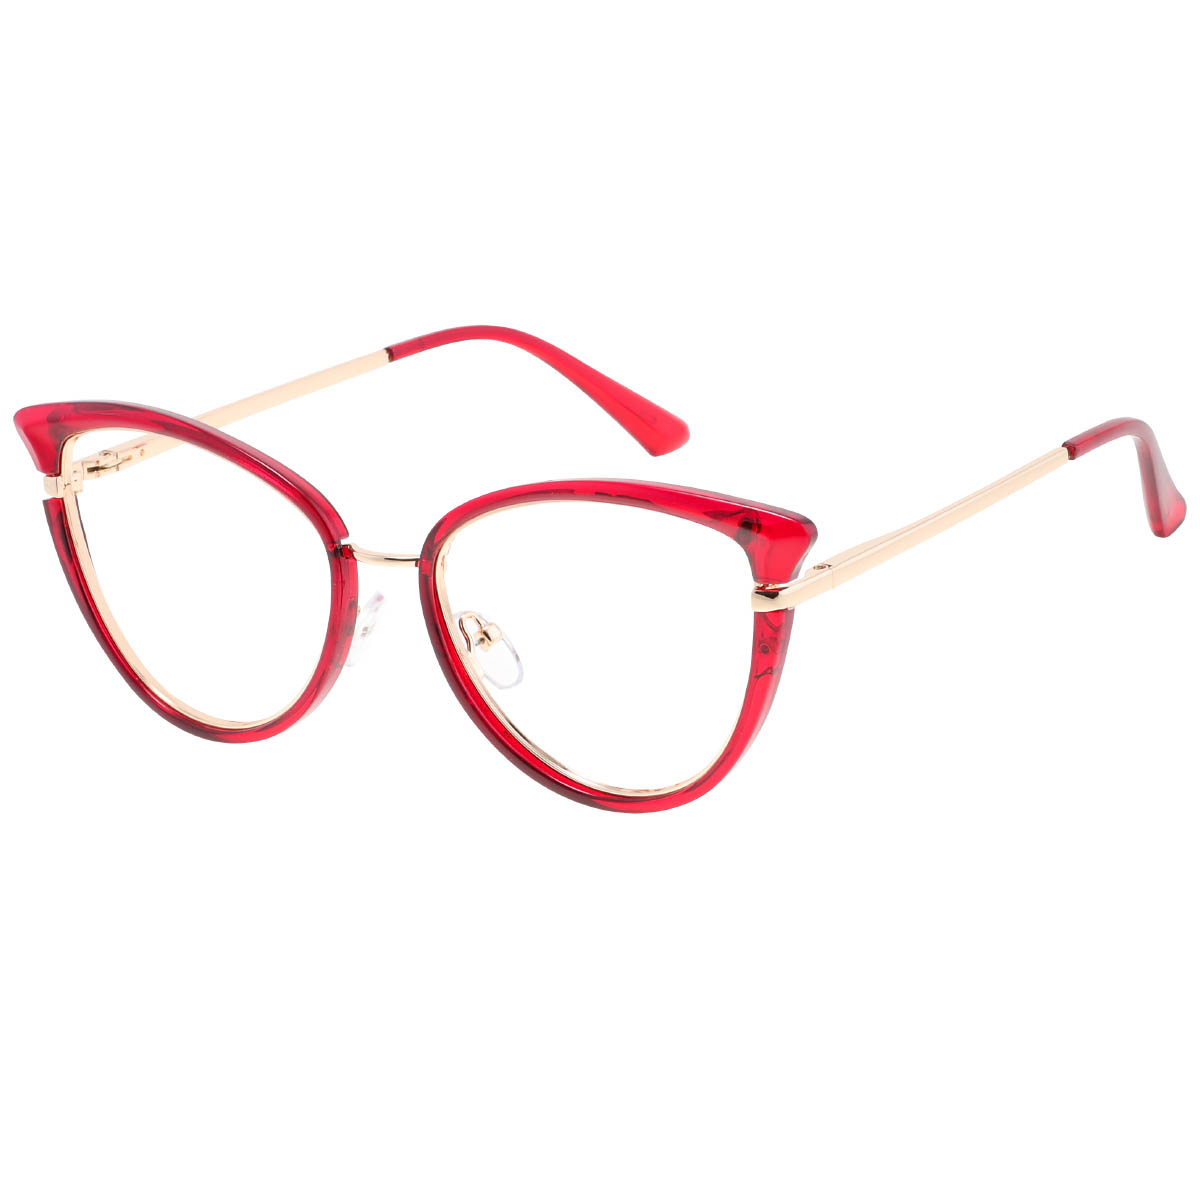 Barcelona - Cat-eye Red Reading Glasses for Women